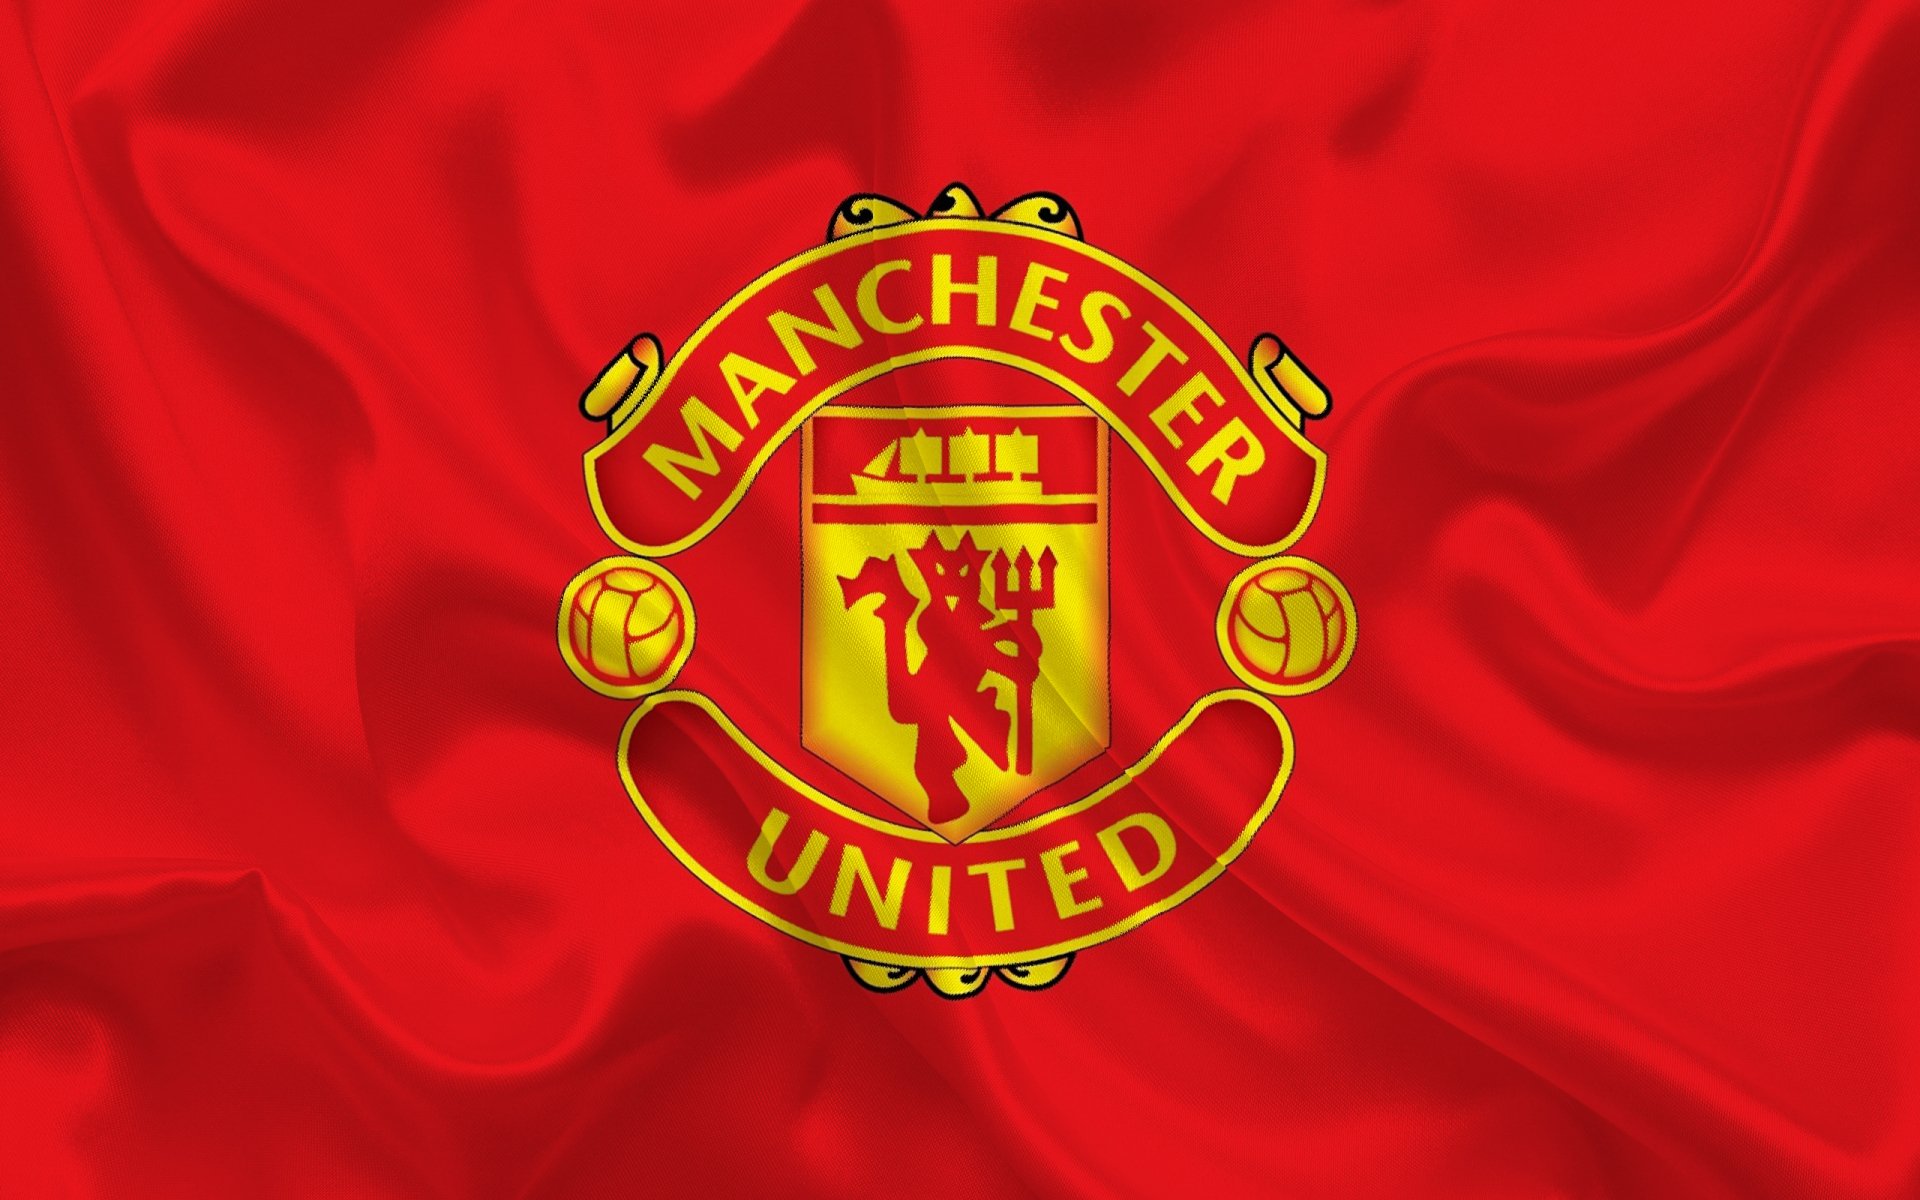 Manchester United Logo: Quá trình phát triển của Man United được khởi đầu từ bộ áo phông và logo đặc trưng của câu lạc bộ. Hình ảnh về logo của Man United sẽ giúp bạn hiểu rõ hơn về câu lạc bộ và tình yêu của các fan hâm mộ.